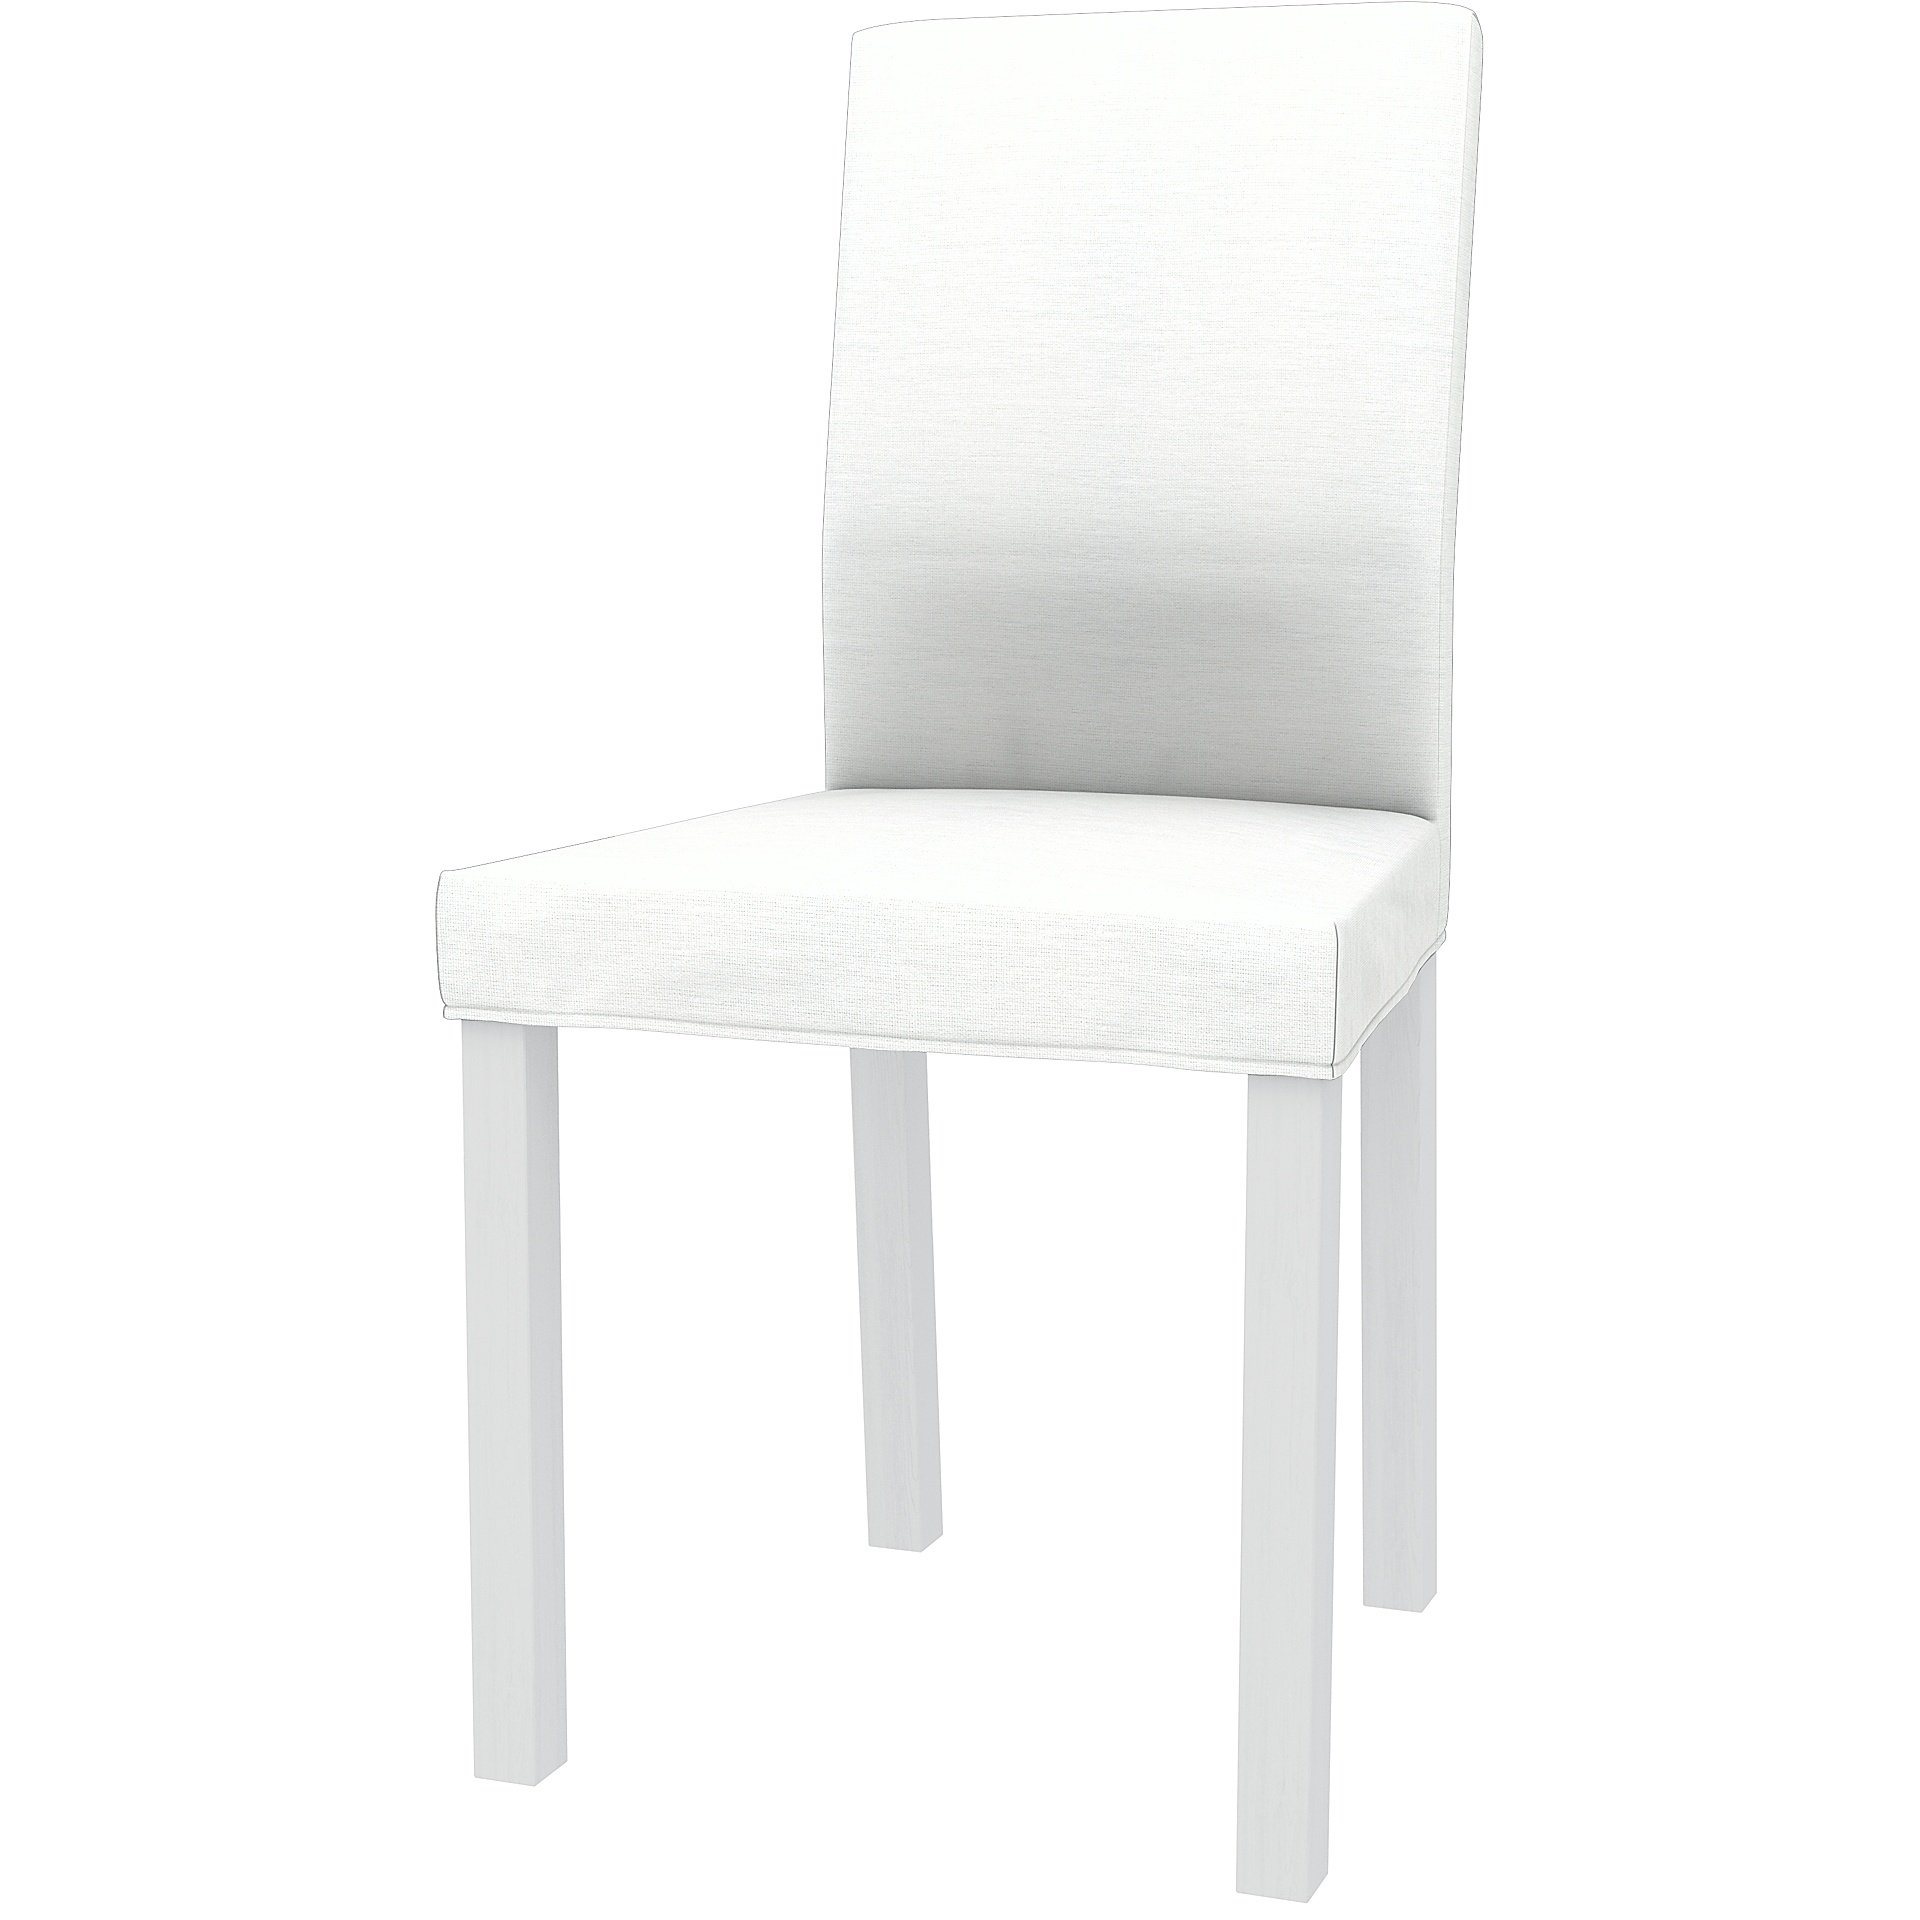 IKEA - KATTIL DINING CHAIR COVER, White, Linen - Bemz